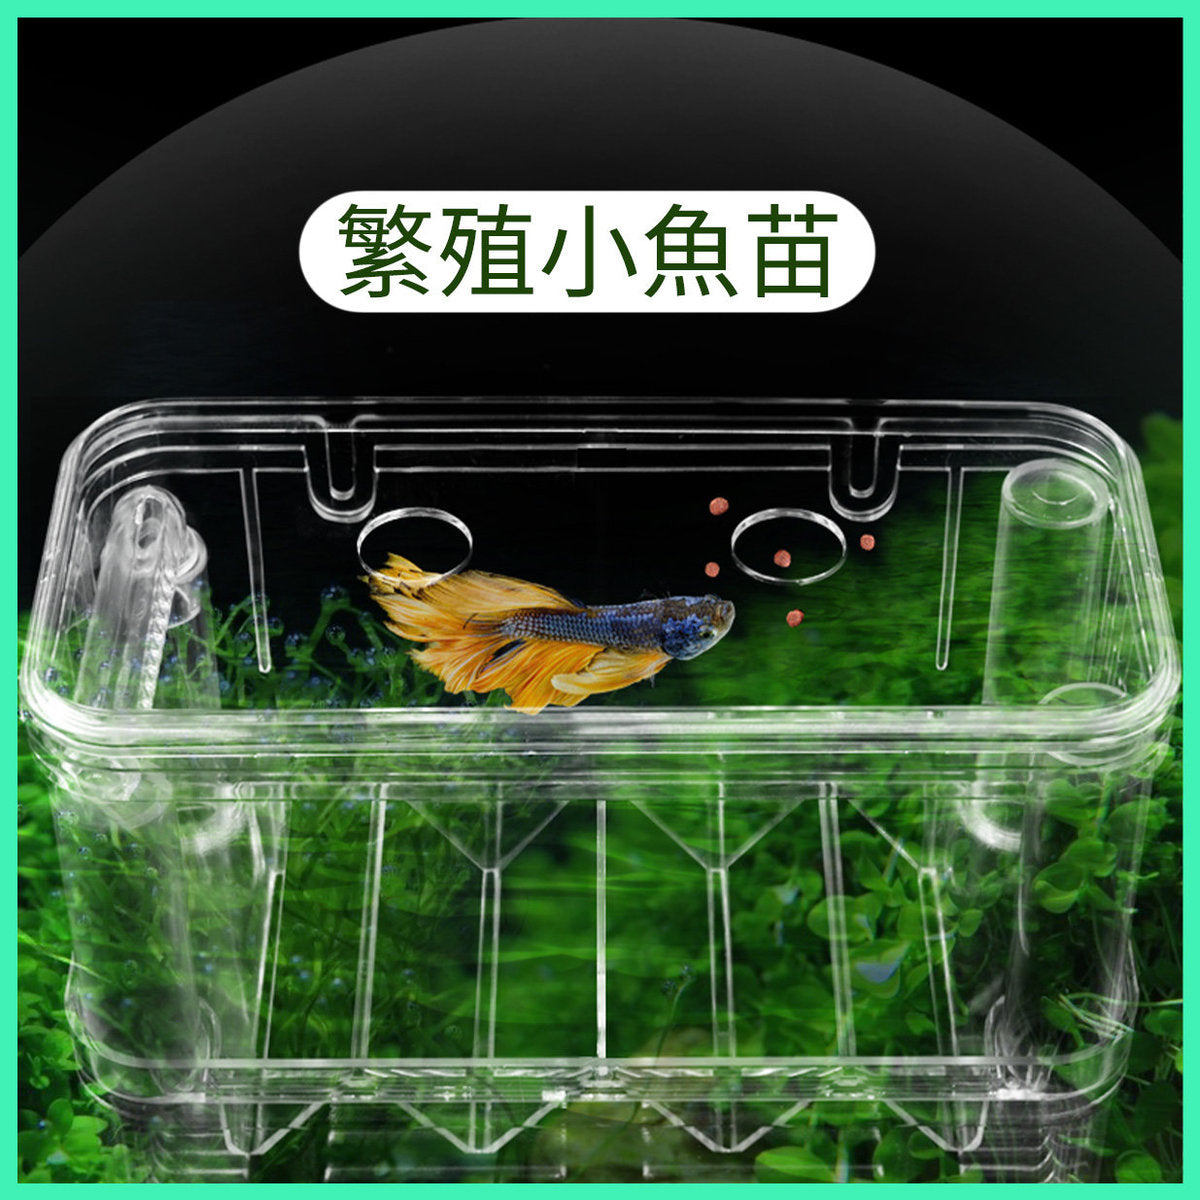 大-鱼苗繁殖箱鱼缸孔雀鱼金鱼隔离箱分隔鱼隔孵化箱幼鱼产卵孵化箱13.5x14x8cm